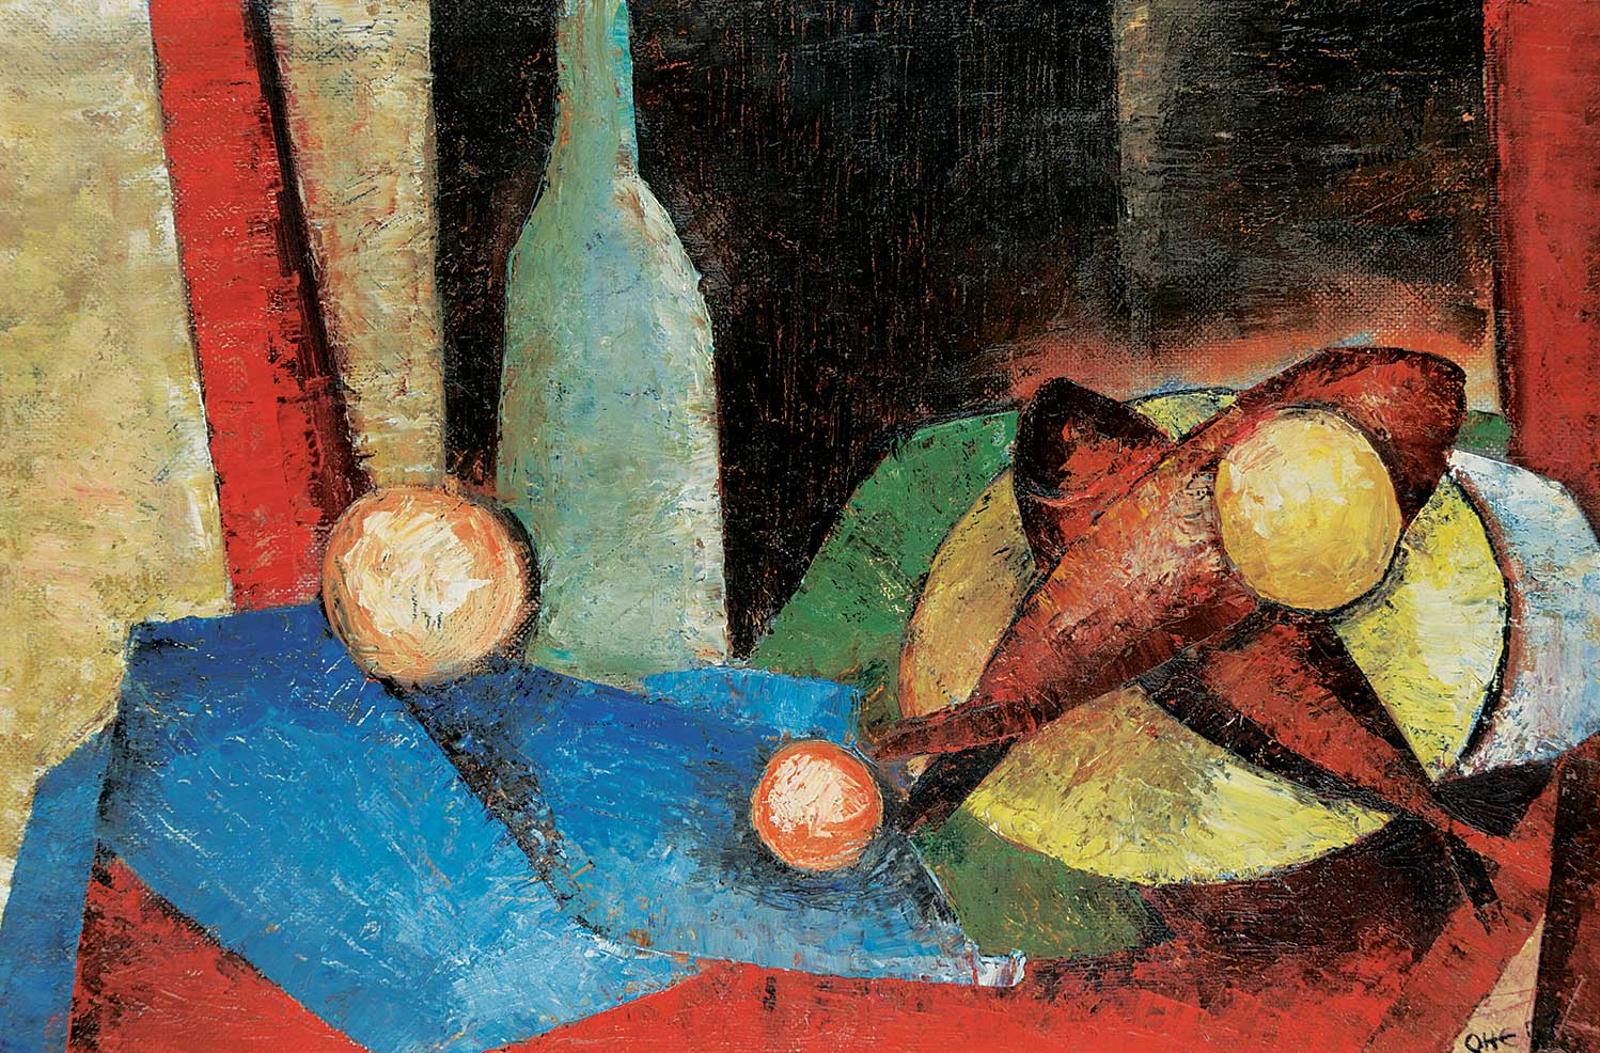 Katie von der Ohe (1937) - Untitled - Still Life with Fish, Bottle and Kumquat